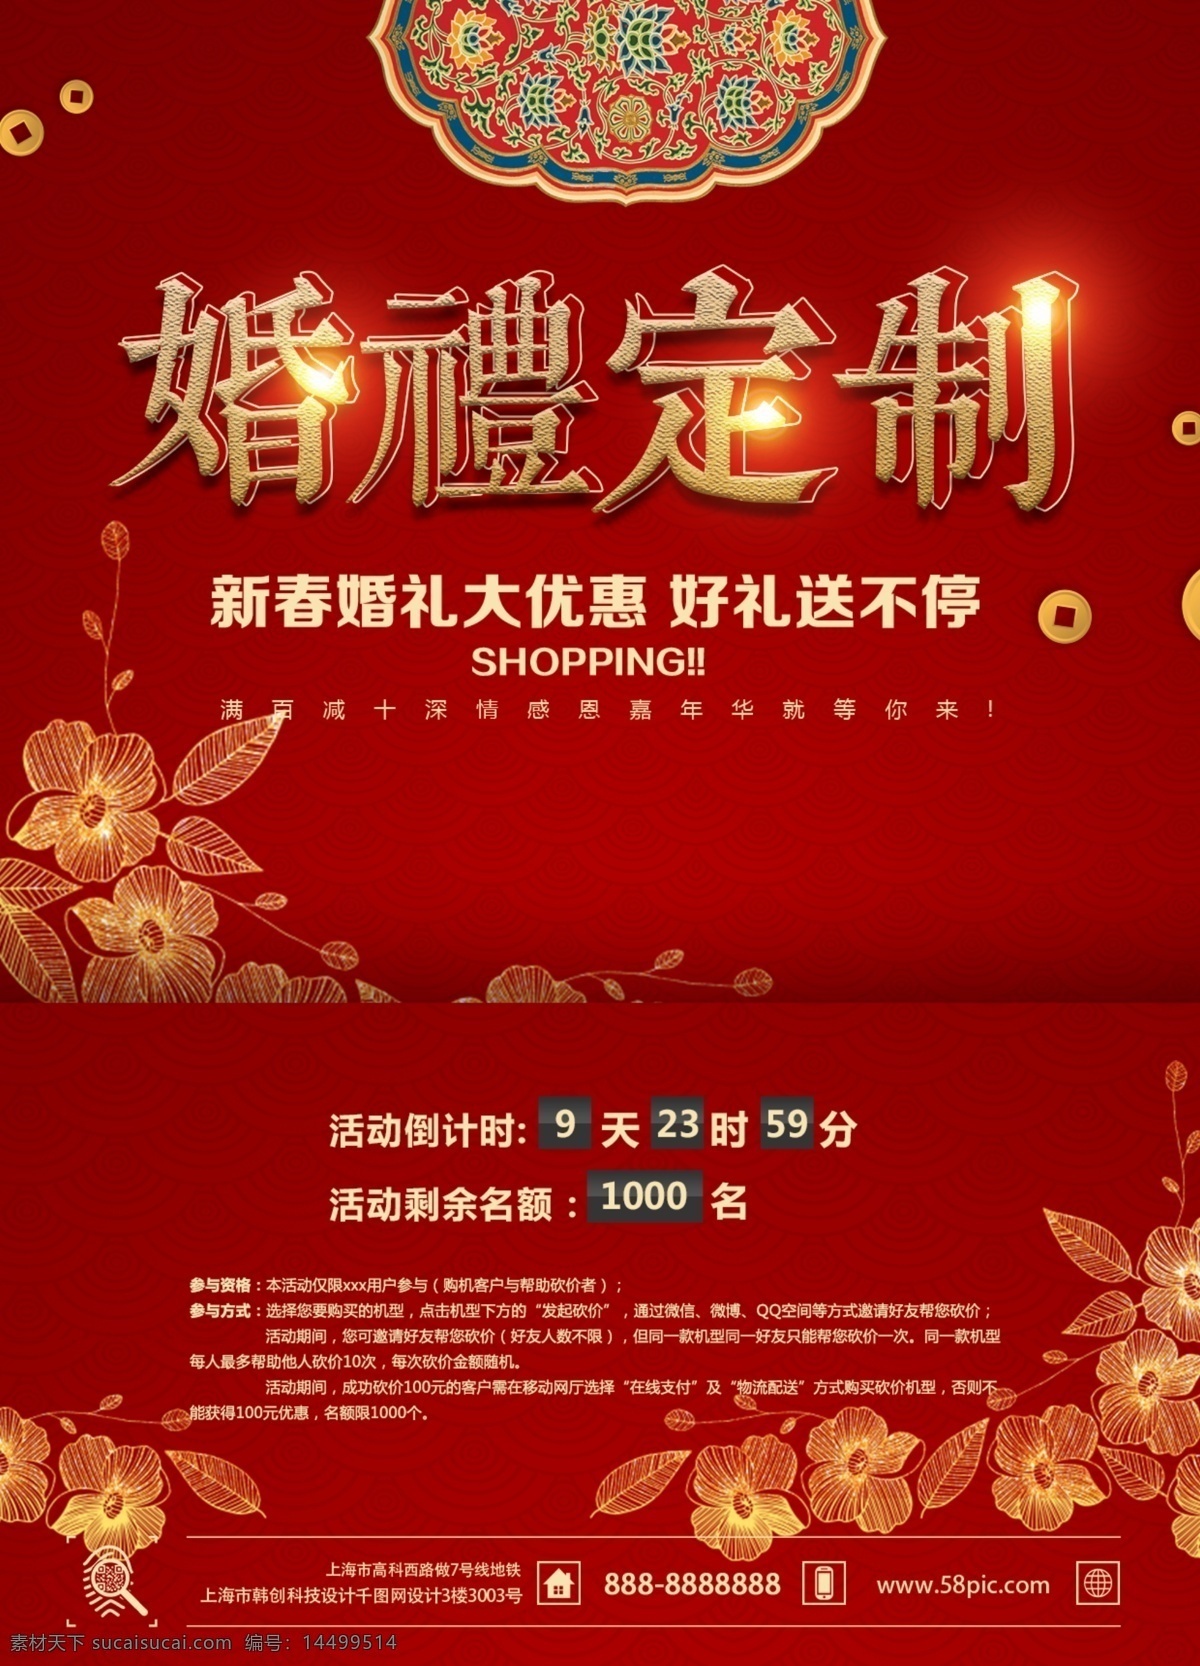 中国 风 红色 大气 新春 婚庆 促销 dm 单 模板 简约 花朵 金色 中国风 背景 渐变 发光 复古